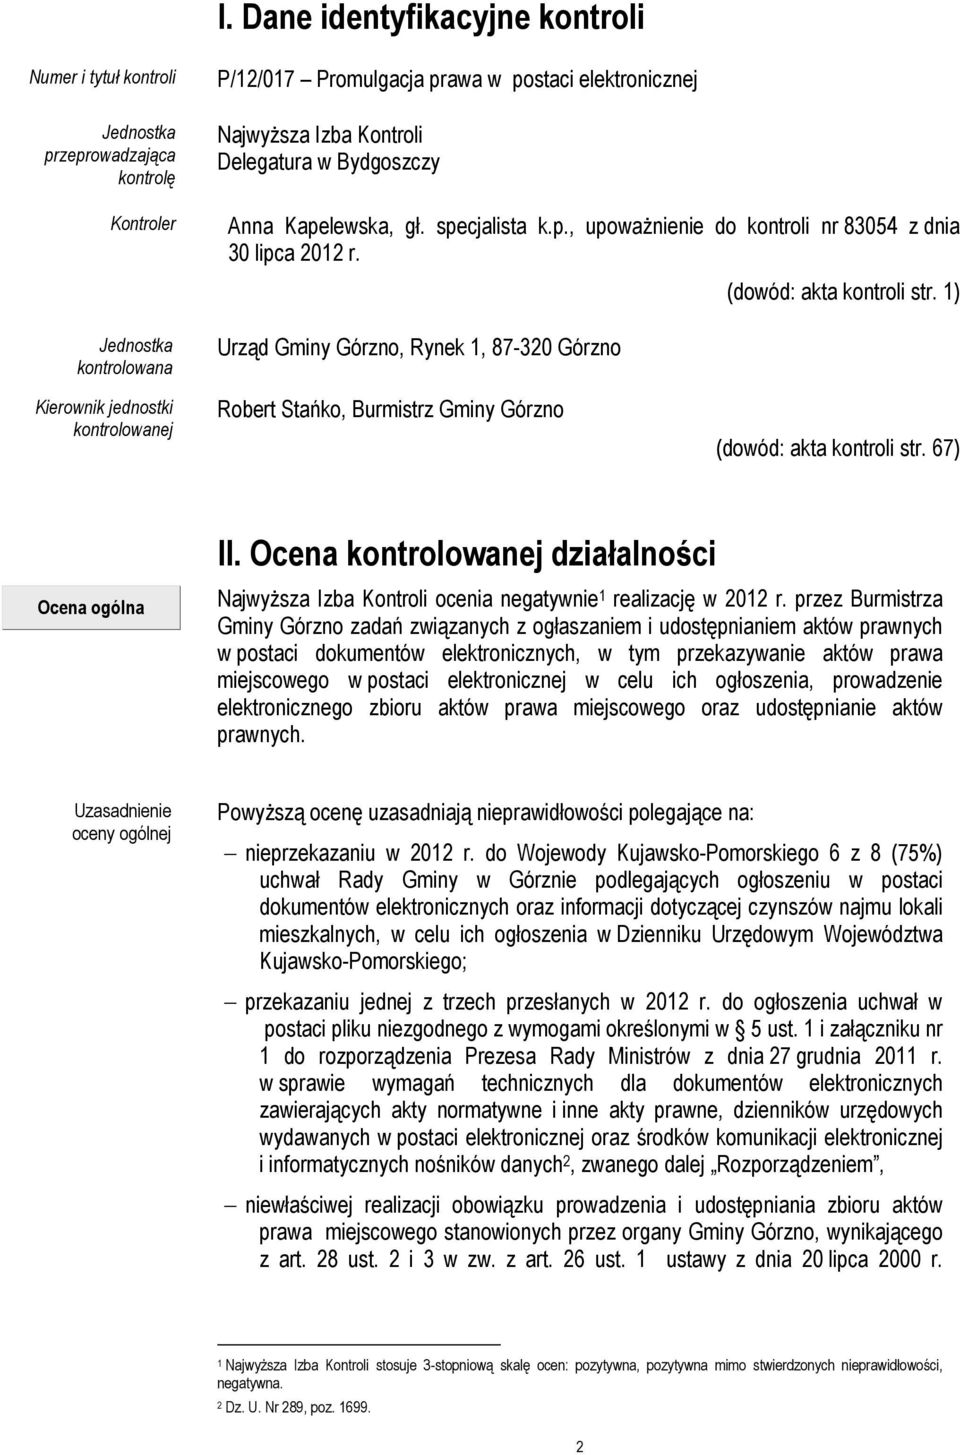 1) Kierownik jednostki kontrolowanej Robert Stańko, Burmistrz Gminy Górzno (dowód: akta kontroli str. 67) II.